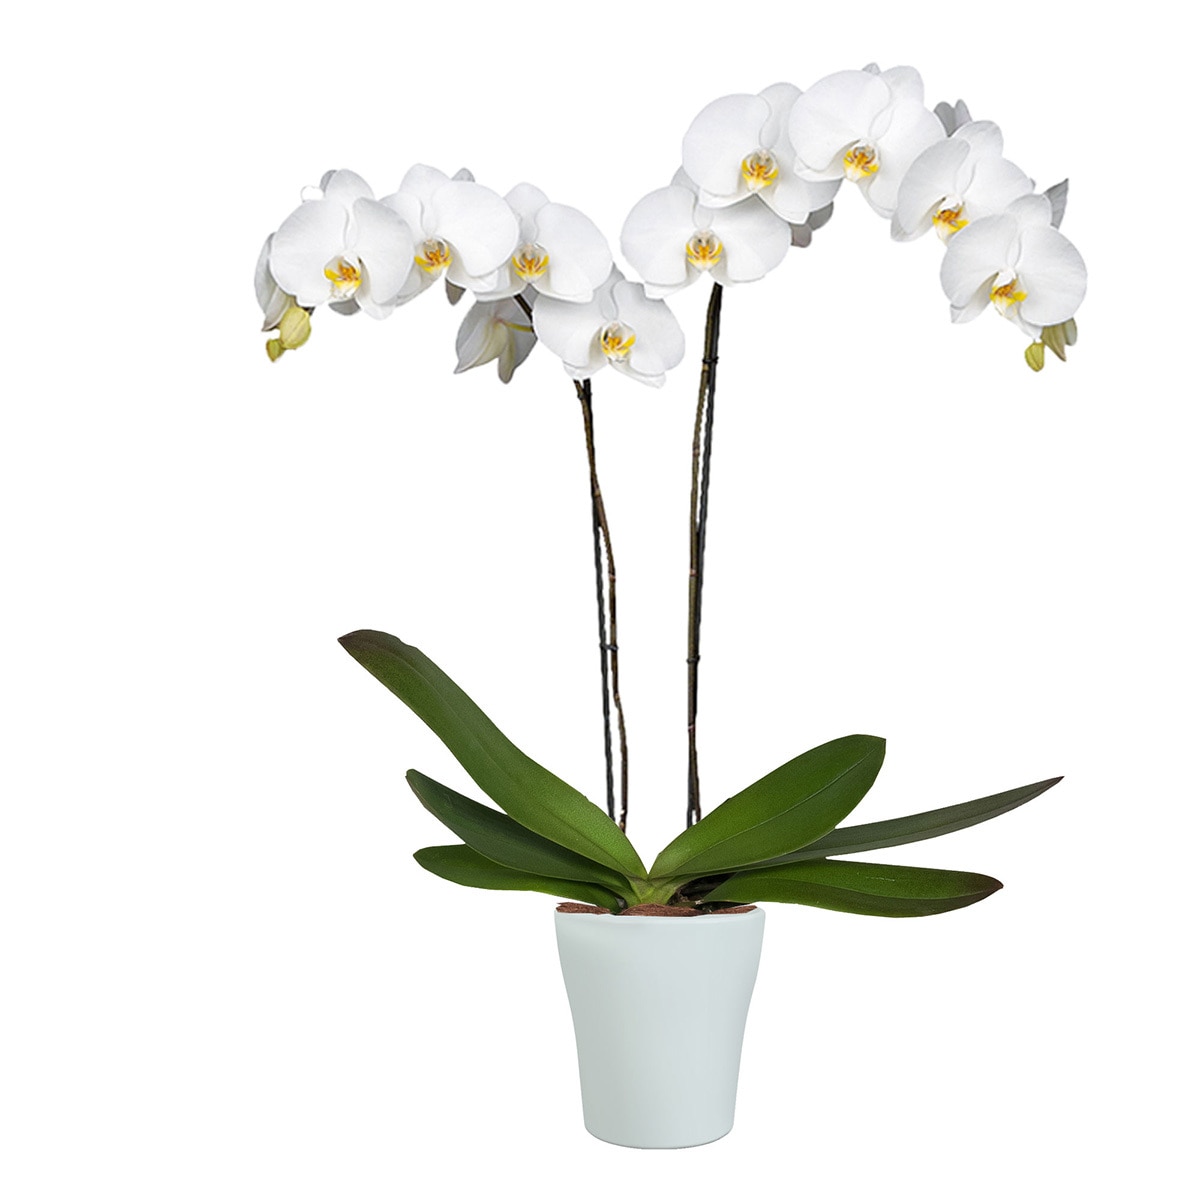 Details 300 picture orquídeas blancas naturales precio